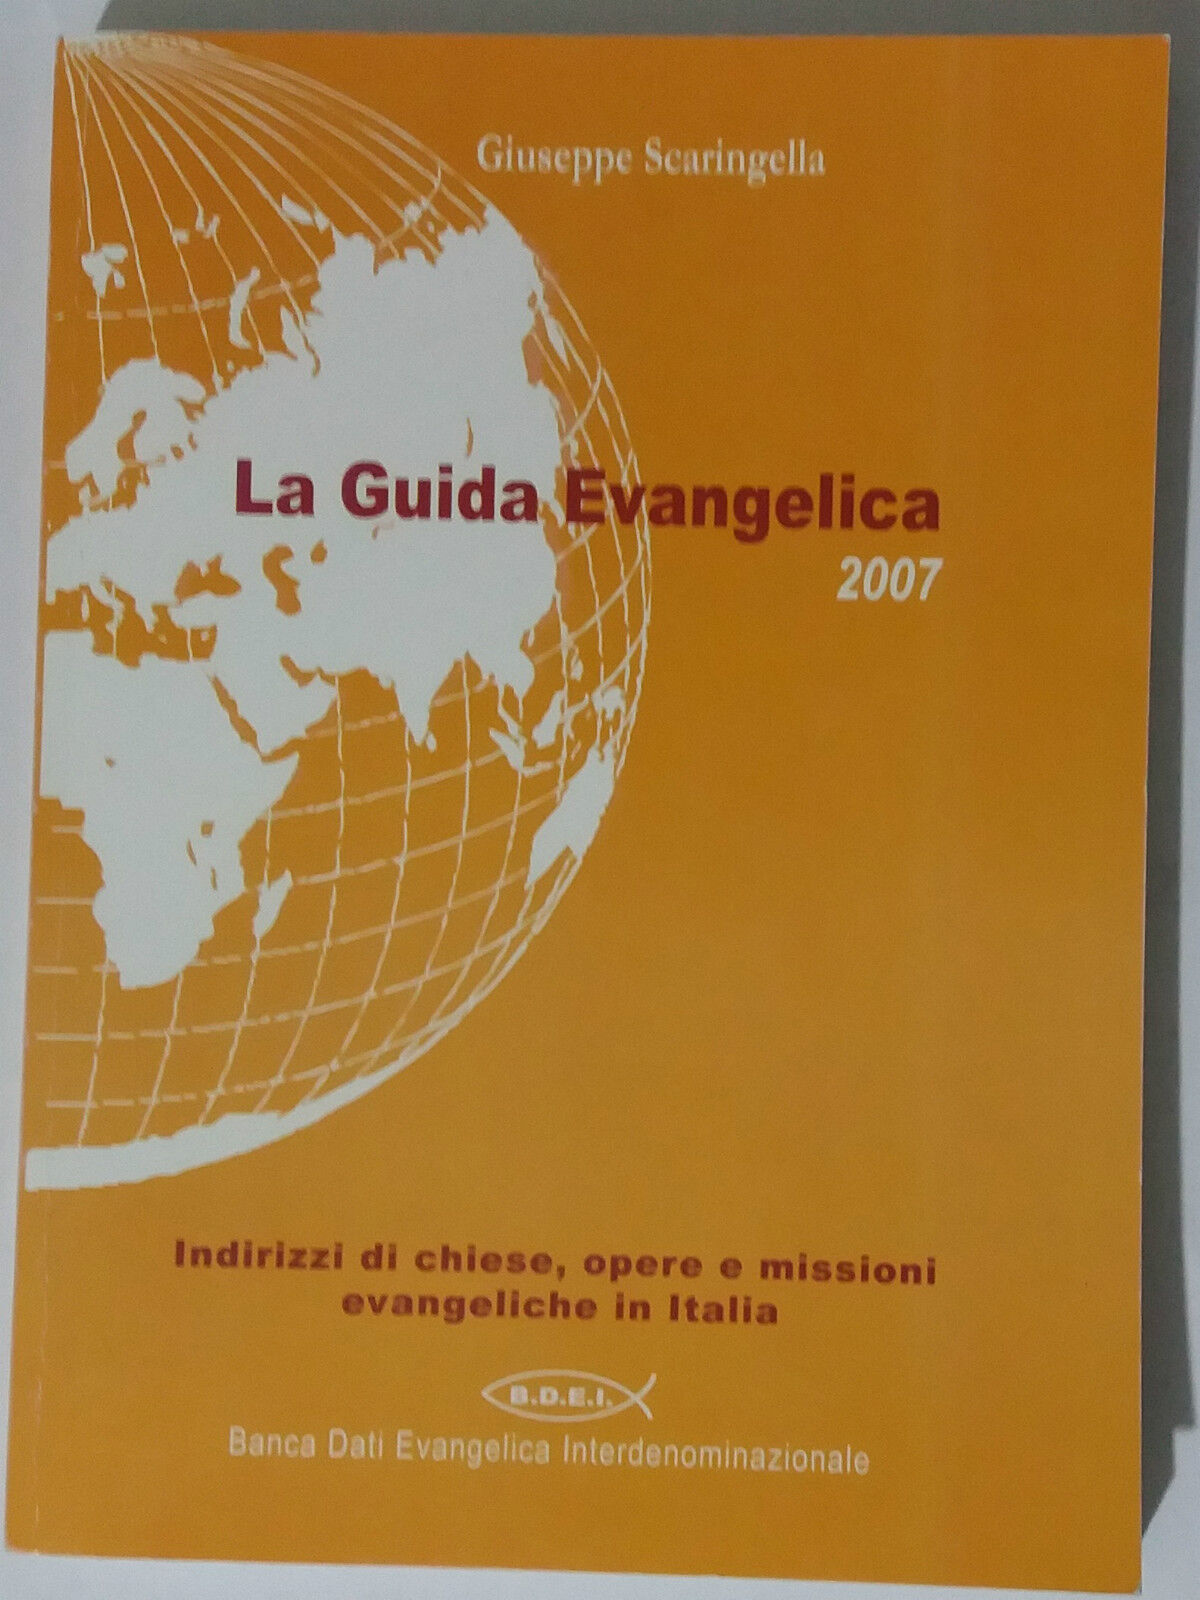 La guida evangelica 2007 - Giuseppe Scaringella - BDEI - 2007 - G